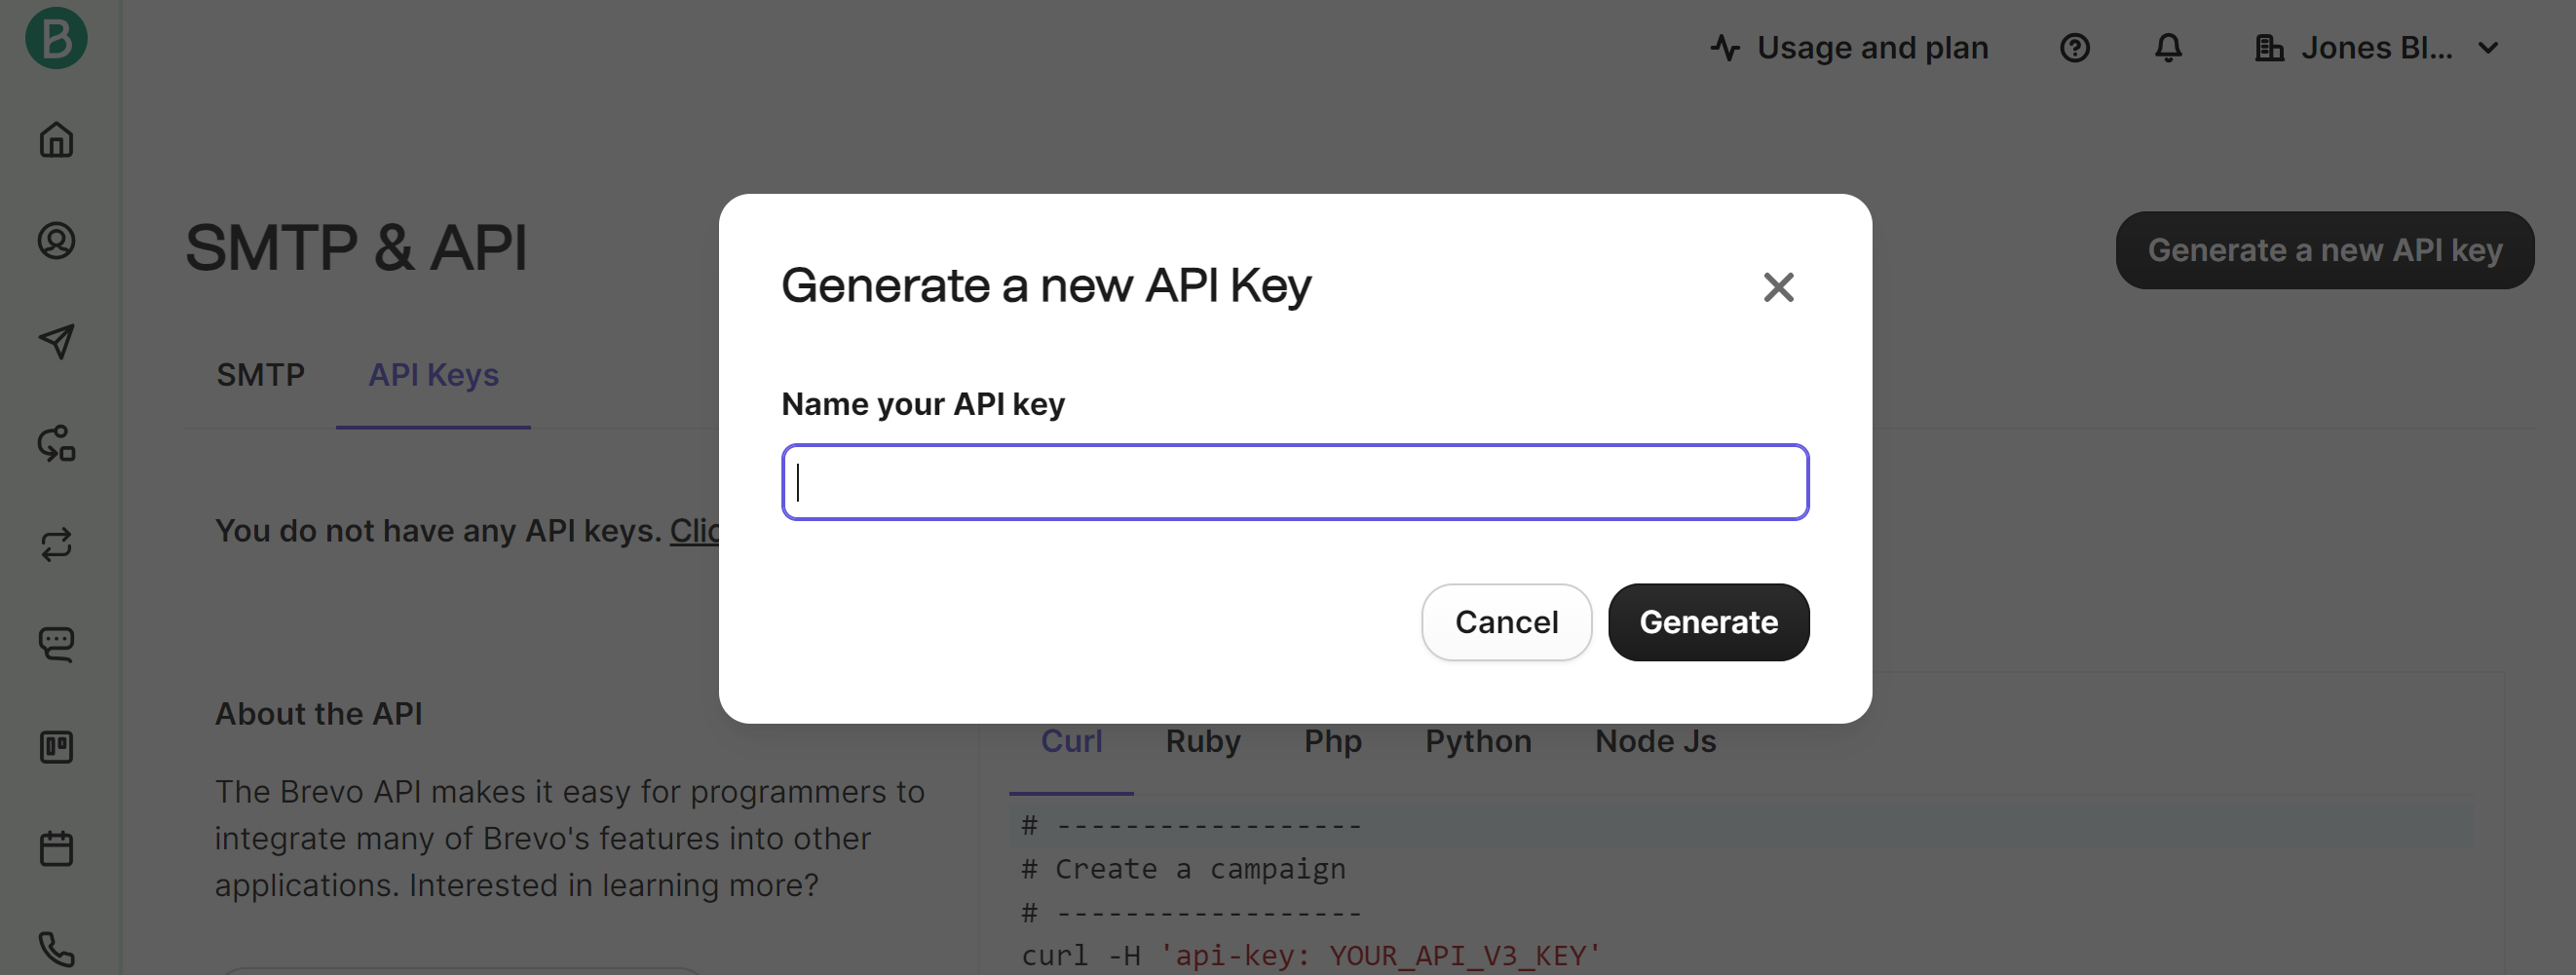 API Key Name